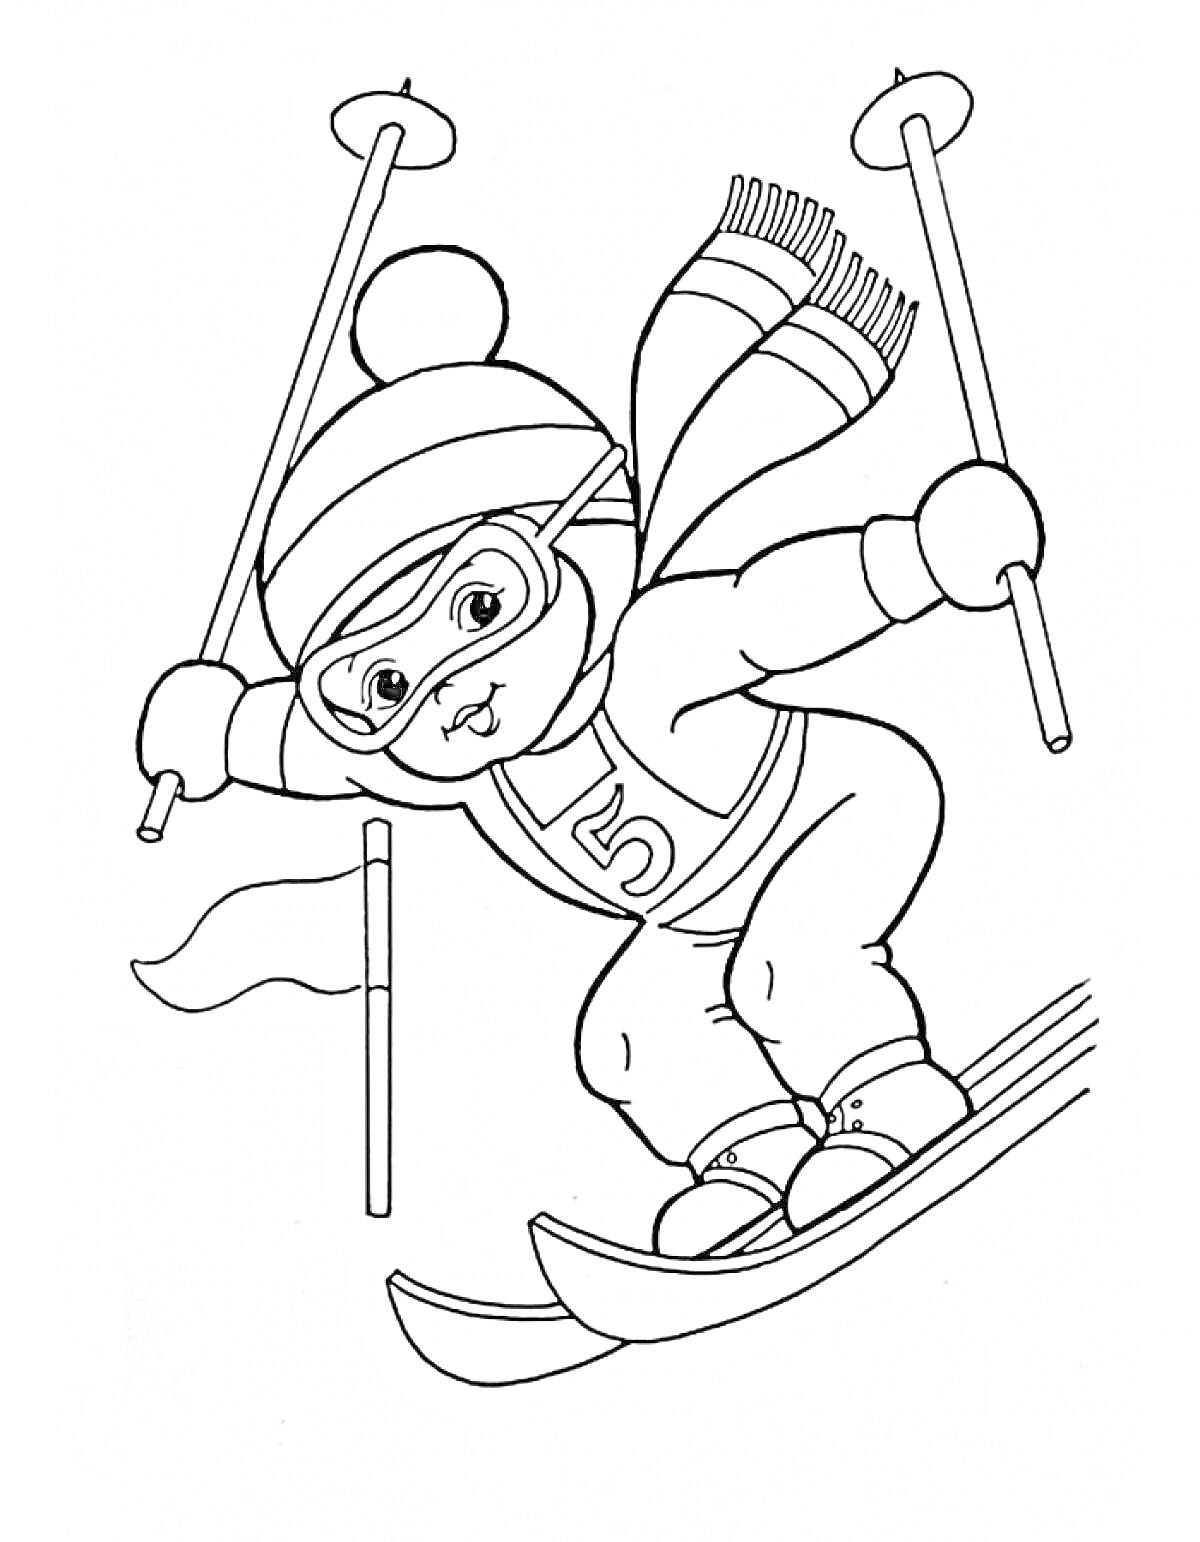 Мишка на лыжах с палками, в костюме со шарфом, шапкой и очками, возле флага